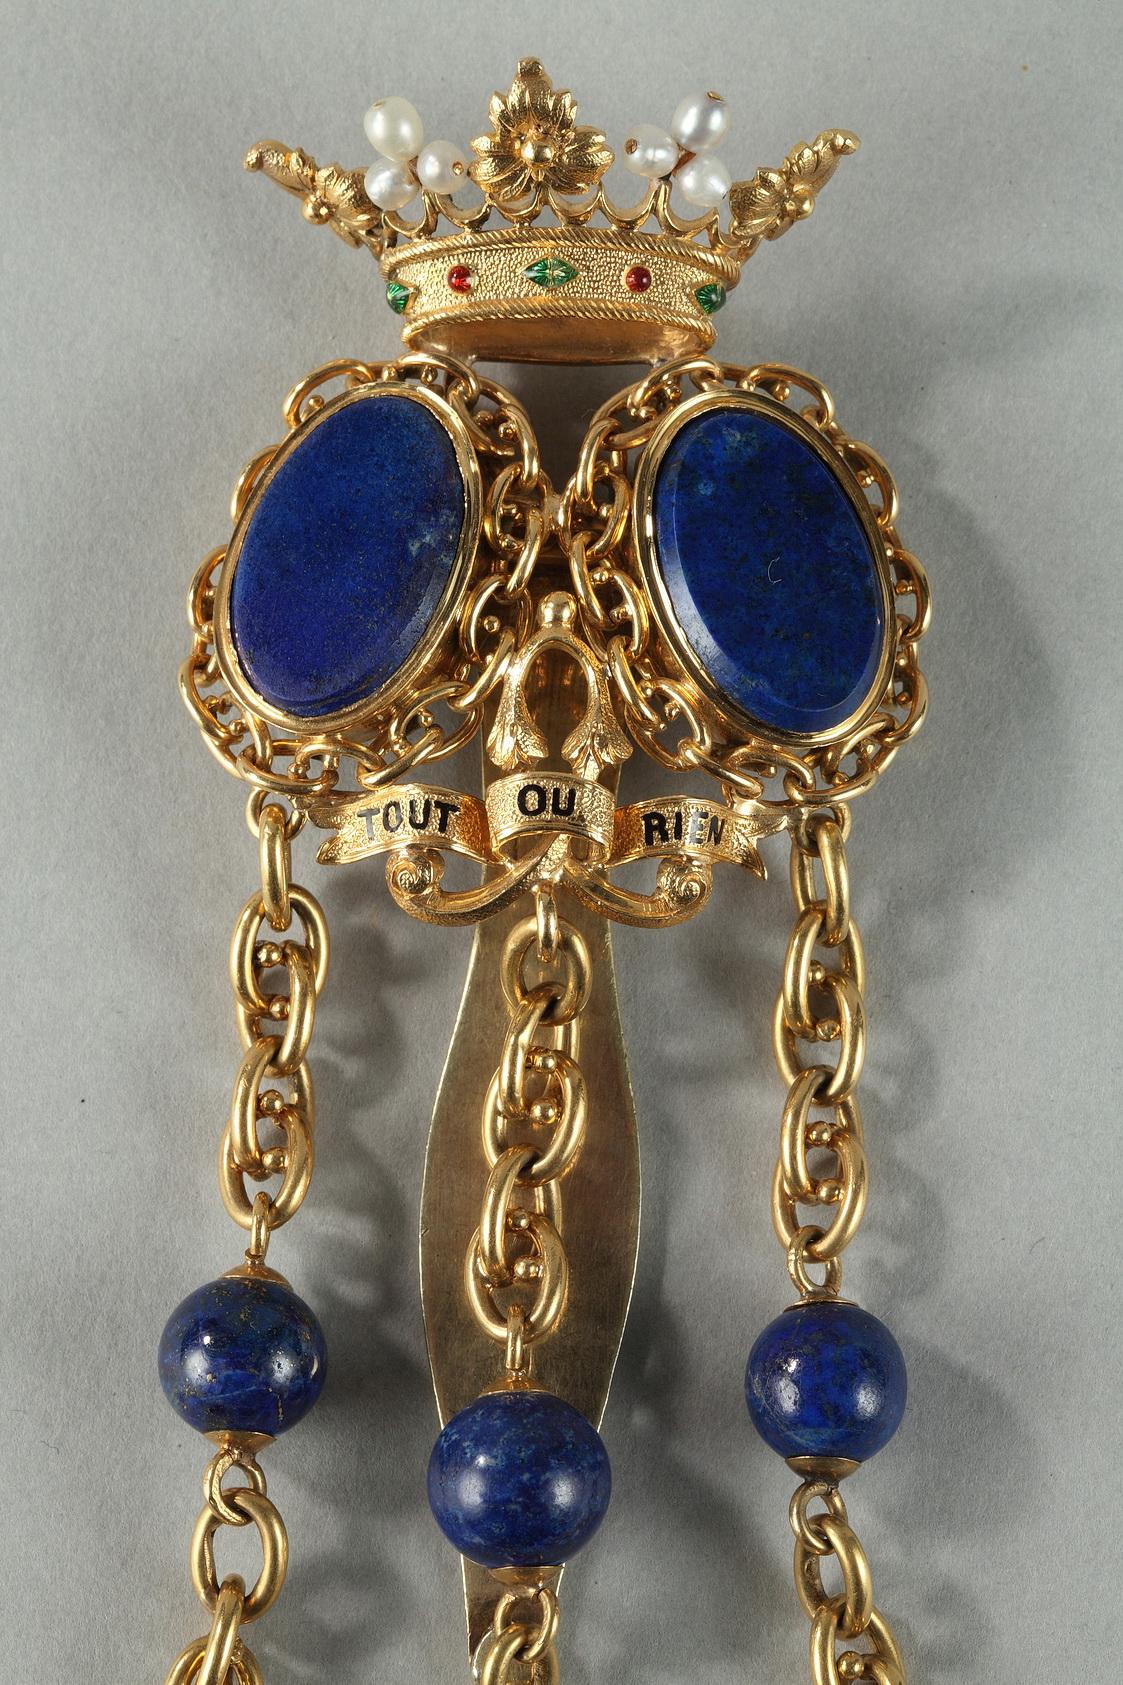 Chatelaine en or avec crochet de ceinture derrière. Deux blasons lisses en lapis-lazuli sont enchâssés dans des anneaux à mailles pensantes et surmontés d'une couronne ornée de perles et incrustée de petites pierres vertes et rouges. Sous les